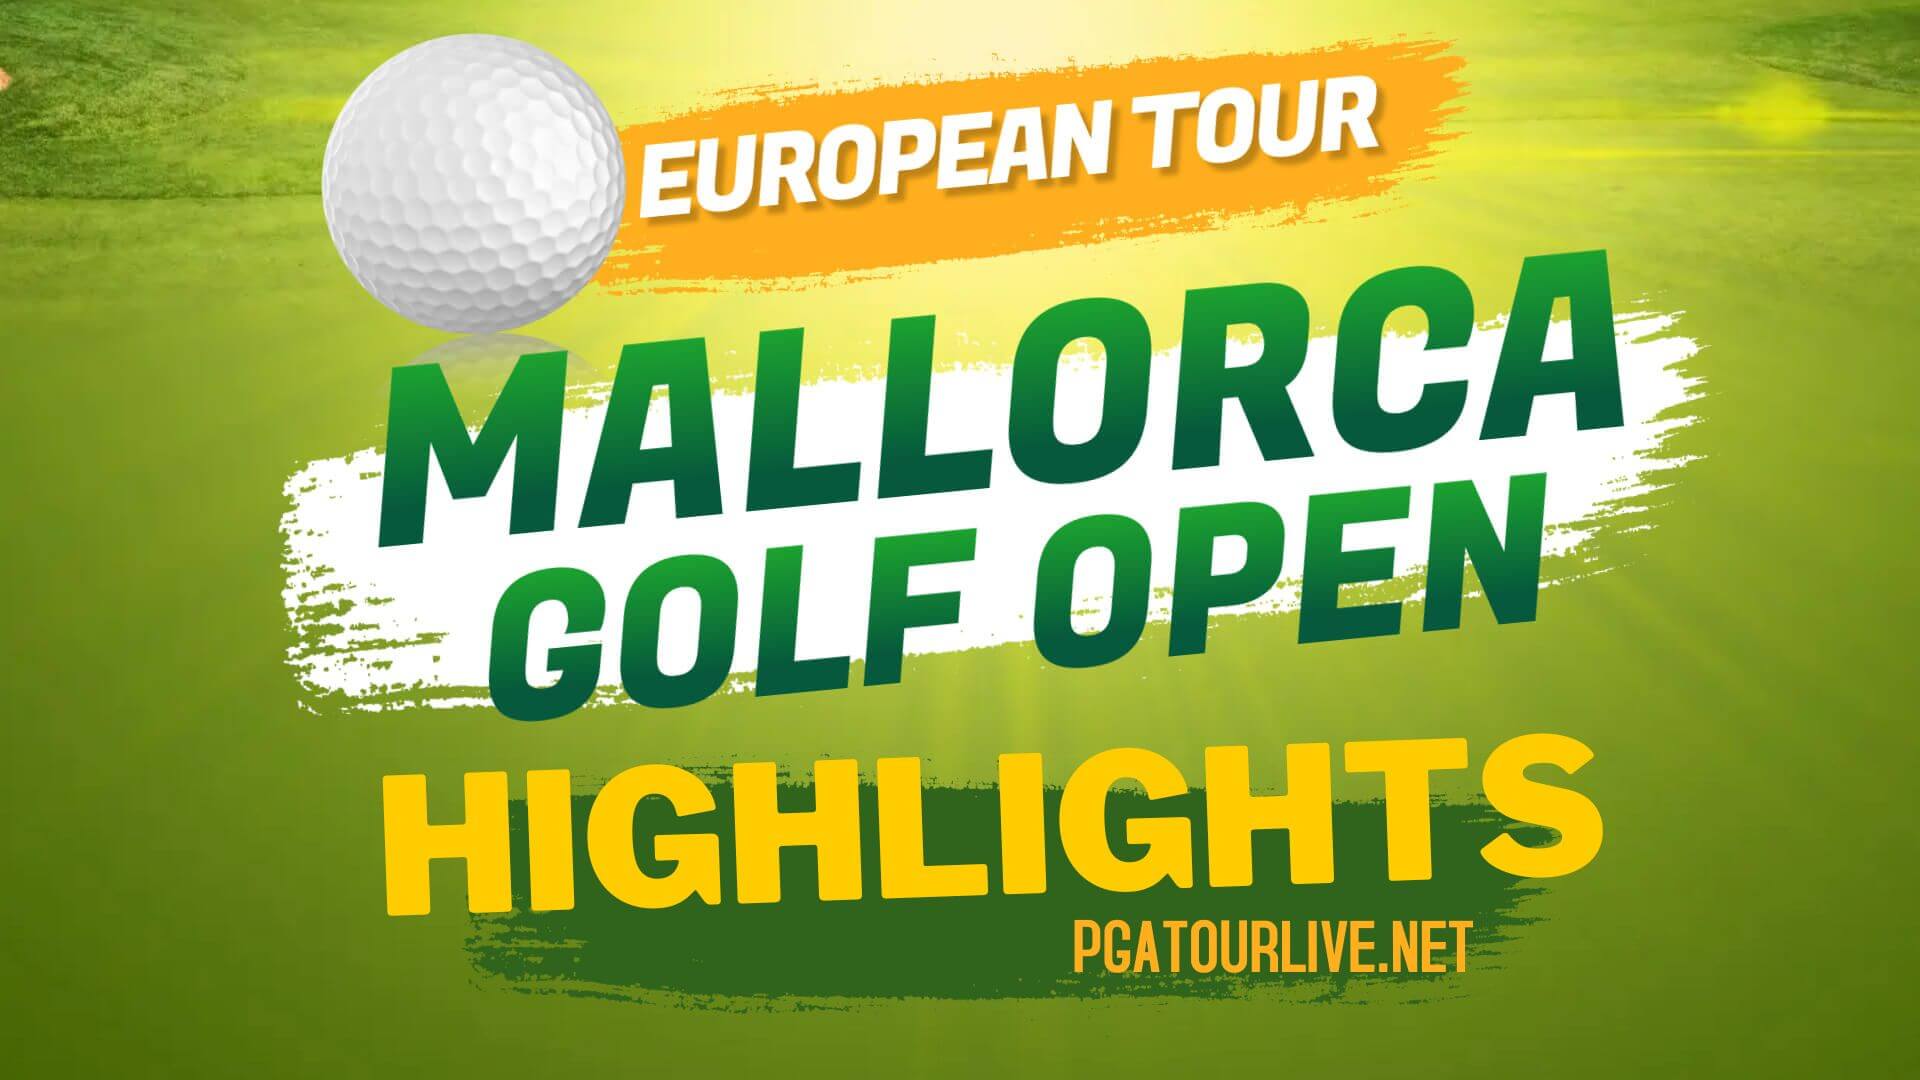 Mallorca Golf Open Highlights Day 3 European Tour 2022